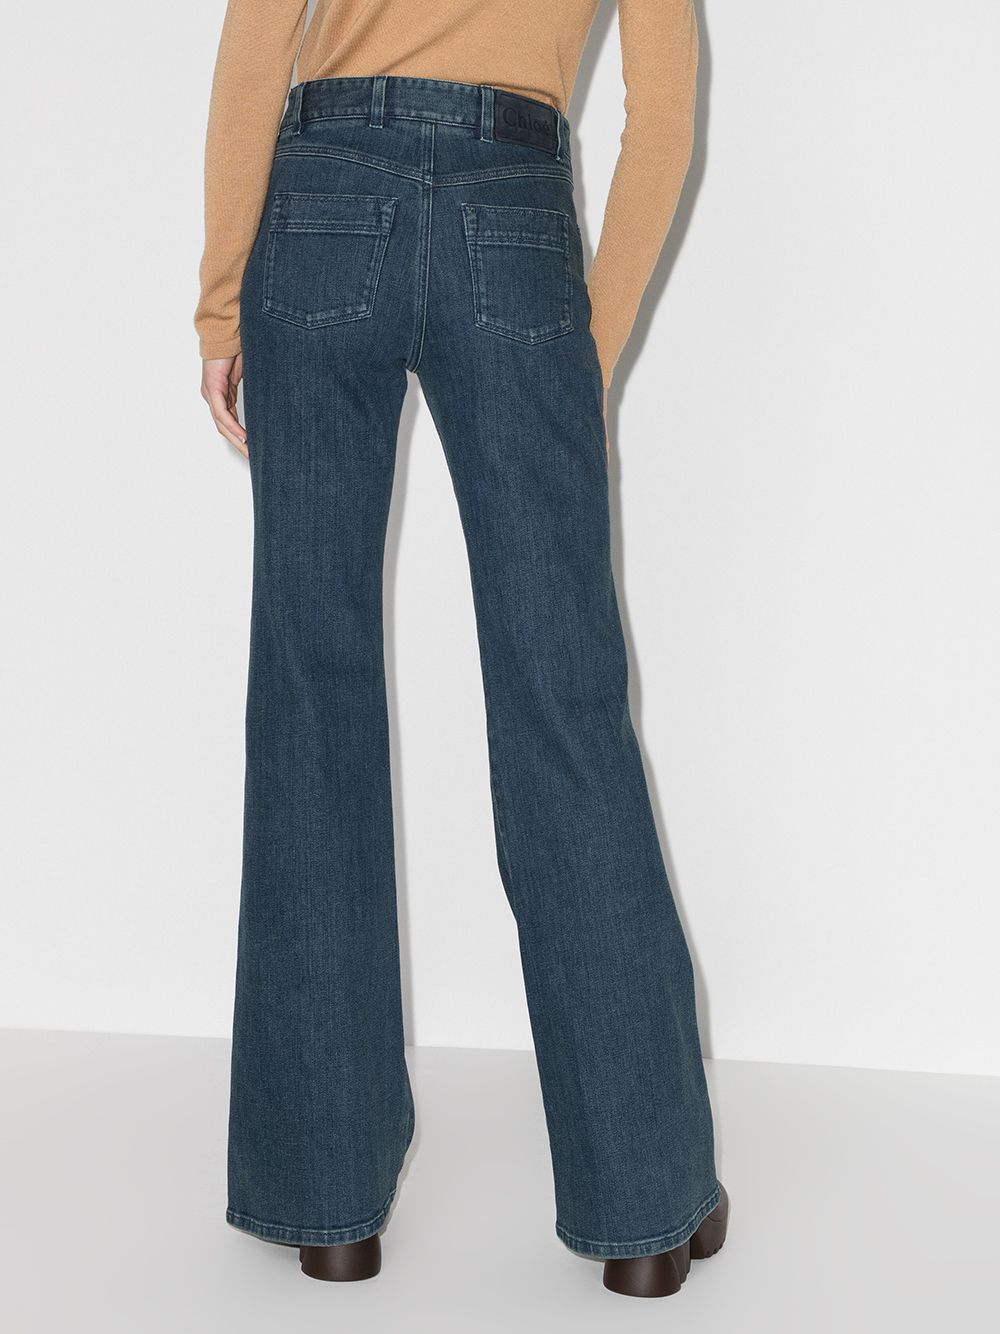 фото Chloé расклешенные джинсы